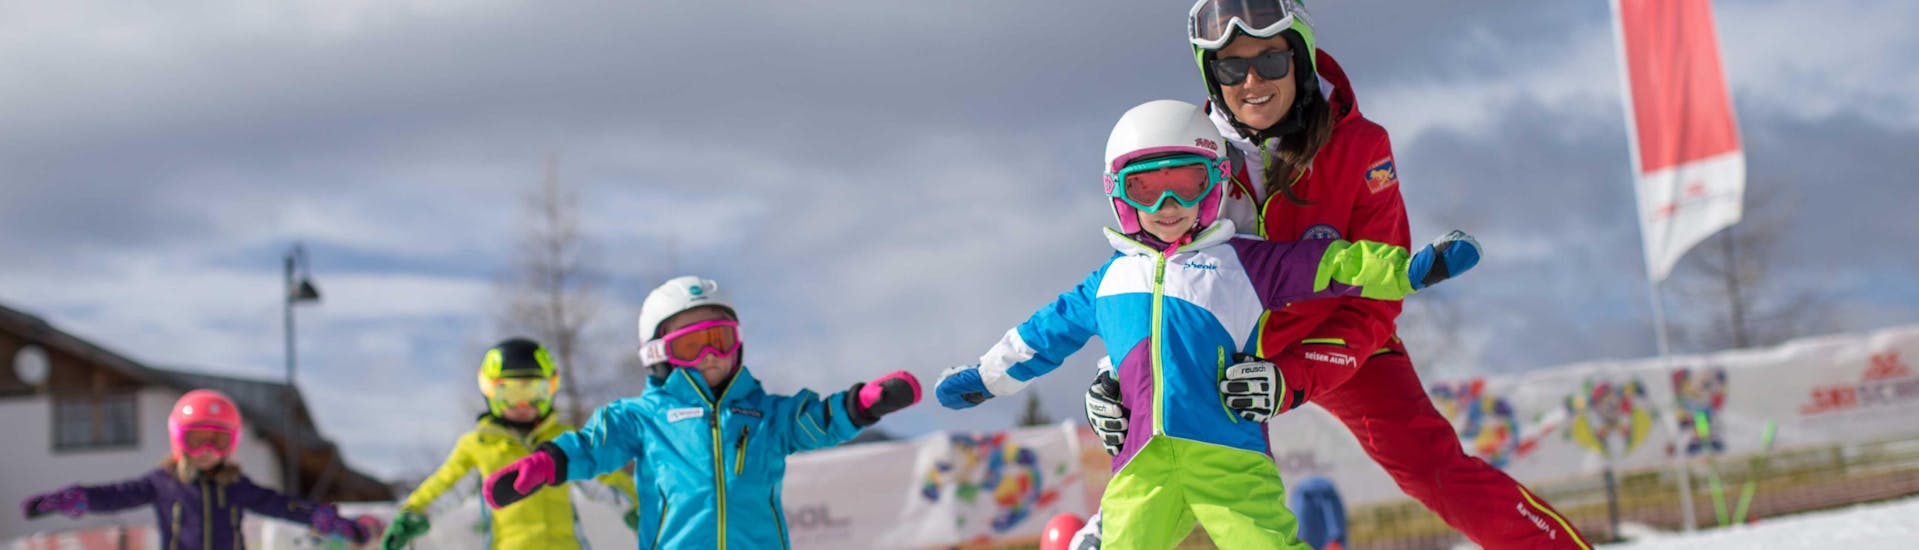 Eine Gruppe von Kindern lernt das Skifahren während des privaten Skikurses der Skischule Seiser Alm.